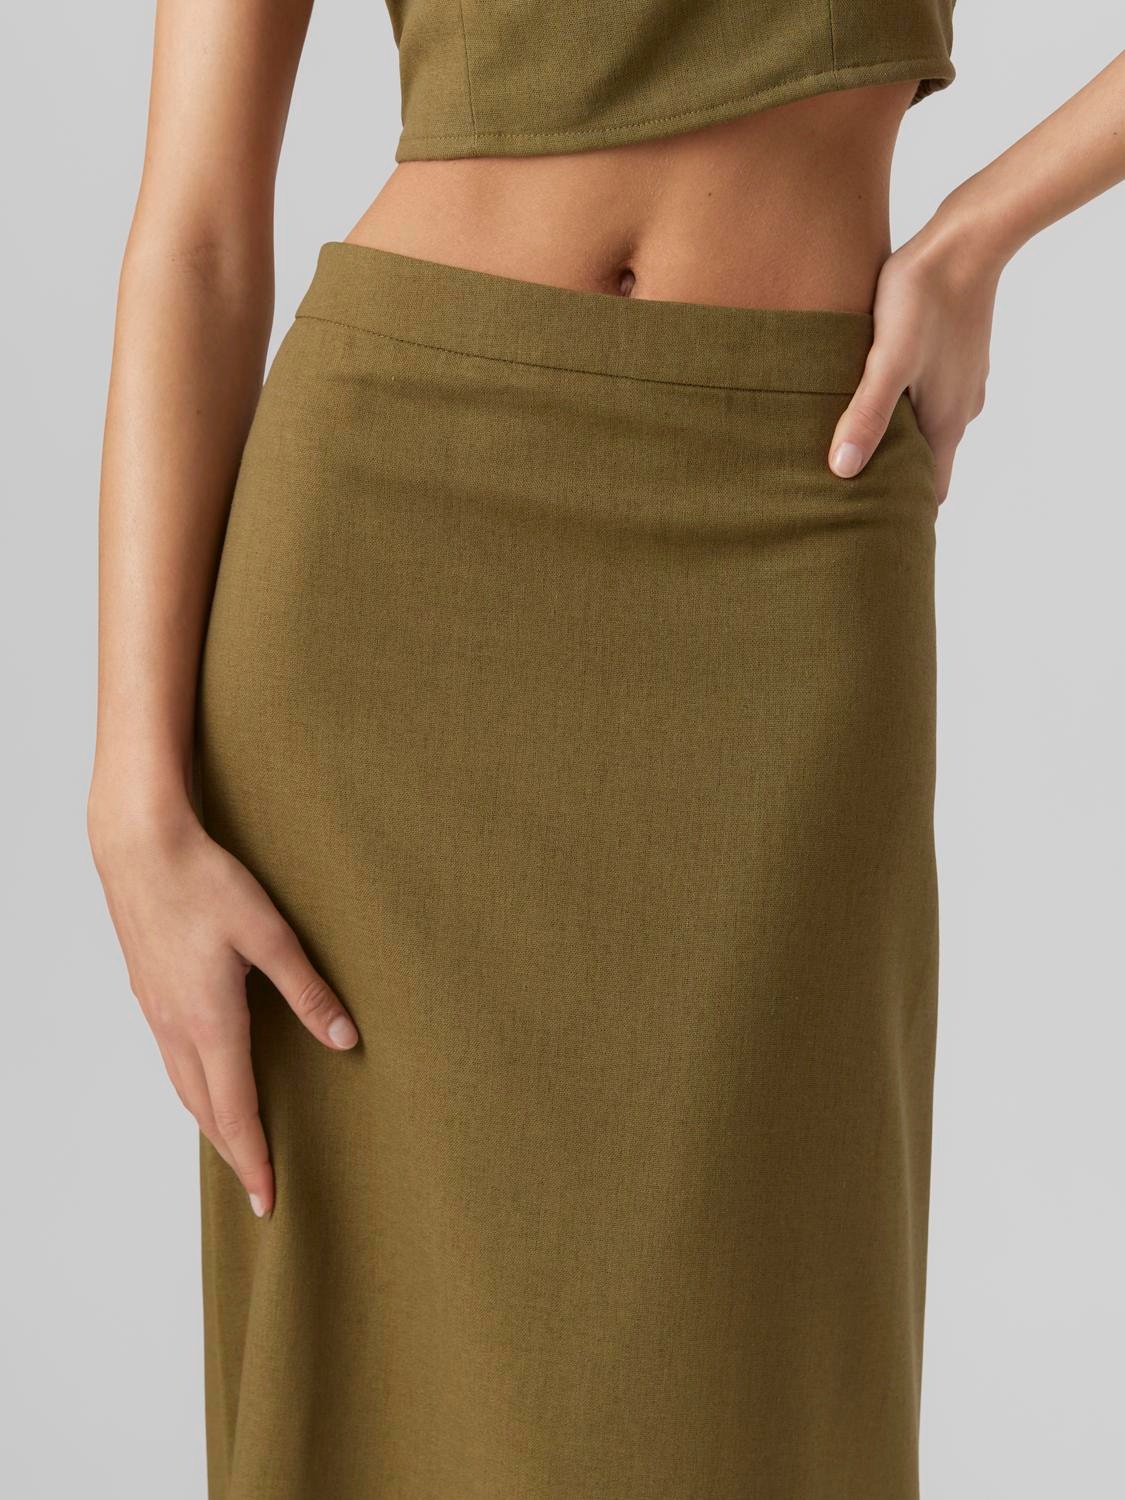 Vero Moda VMMATHILDE Long skirt -Martini Olive - 10292477